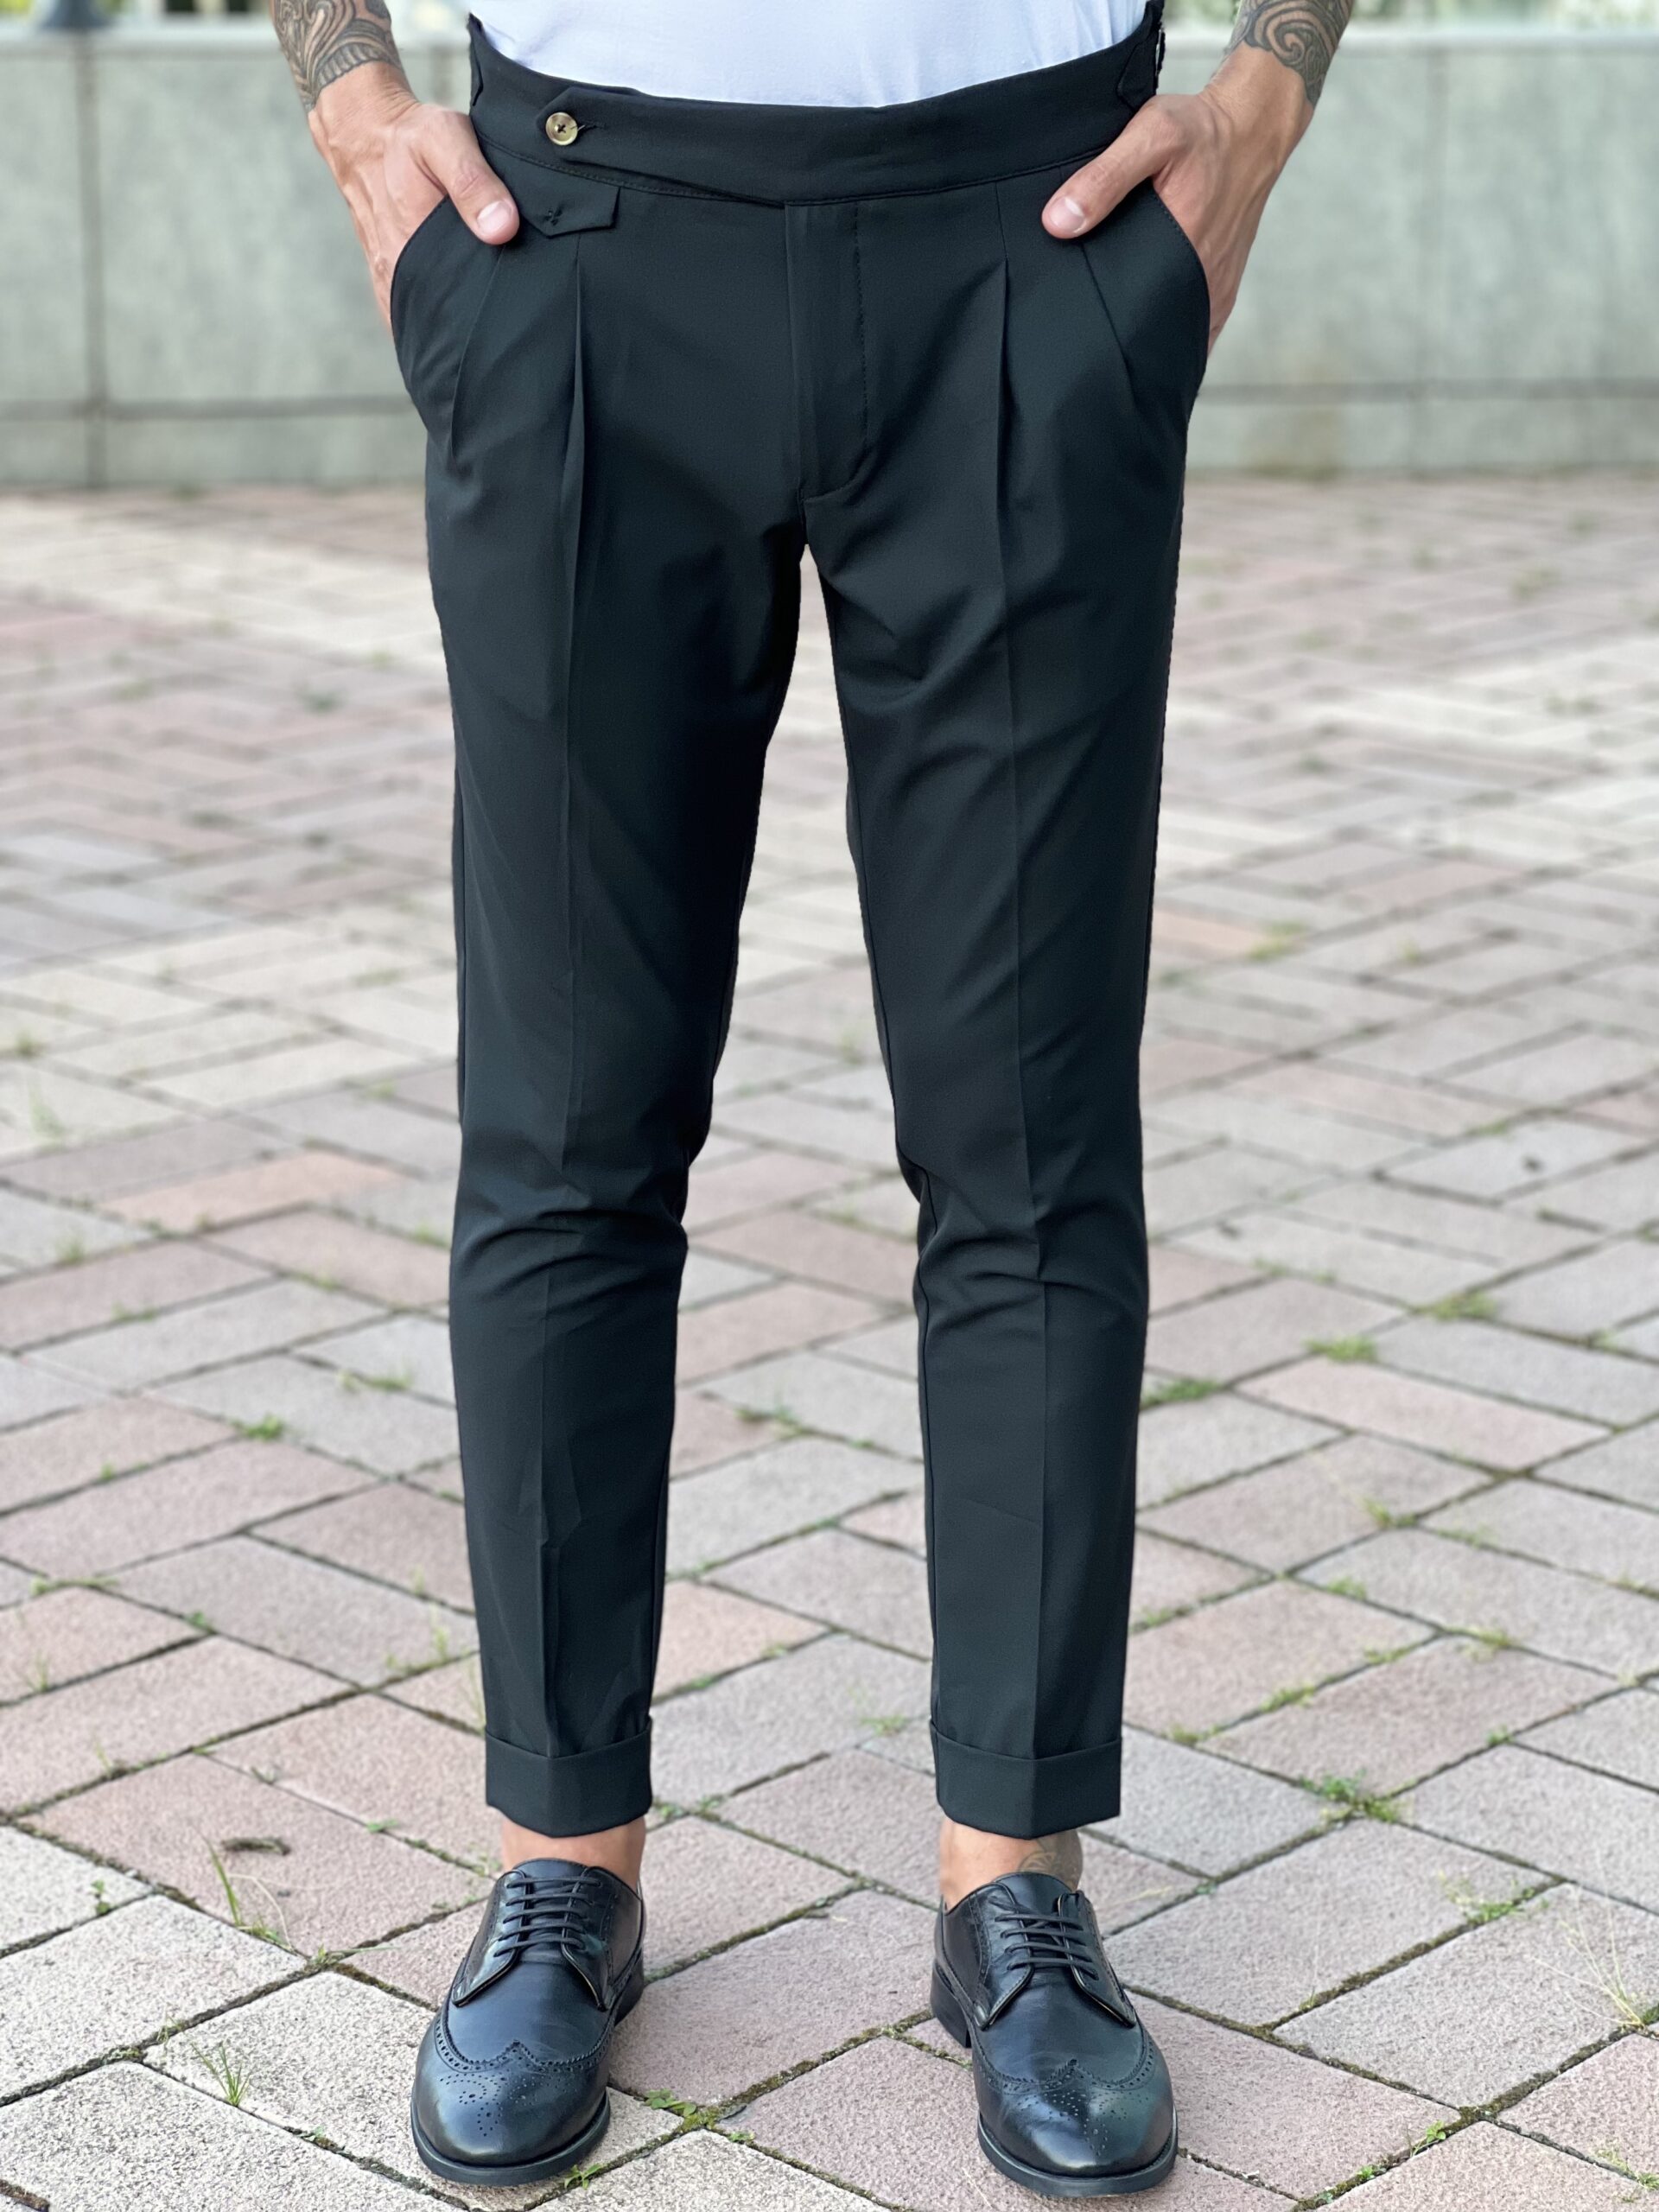 Черные мужские брюки с защипами. Арт.: 3846 – купить в магазине мужскойодежды Smartcasuals